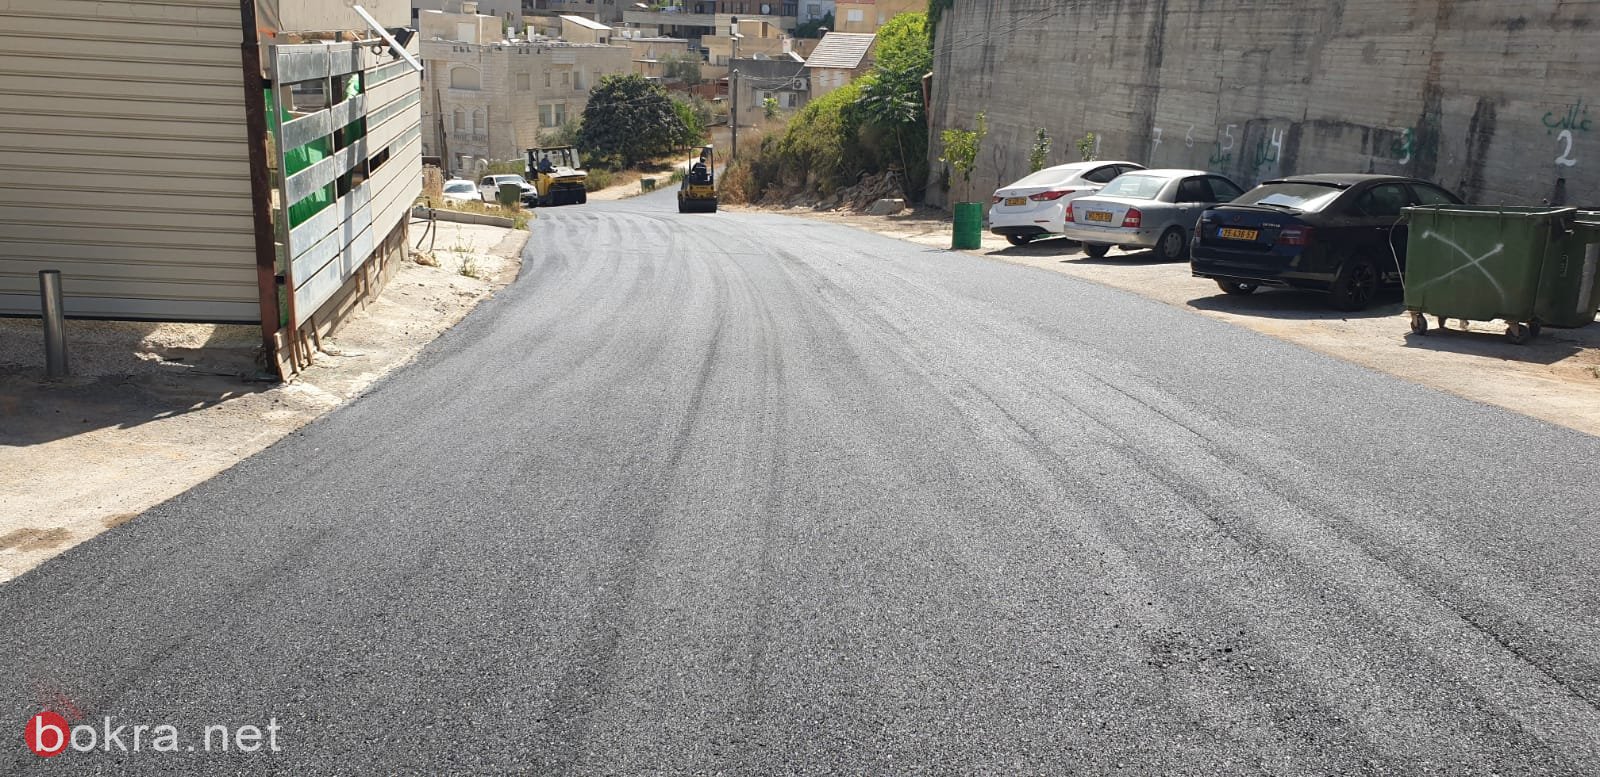 الناصرة: مشروع تعبيد شوارع المدينة يبدأ...حي البشارة يعبد اليوم-13